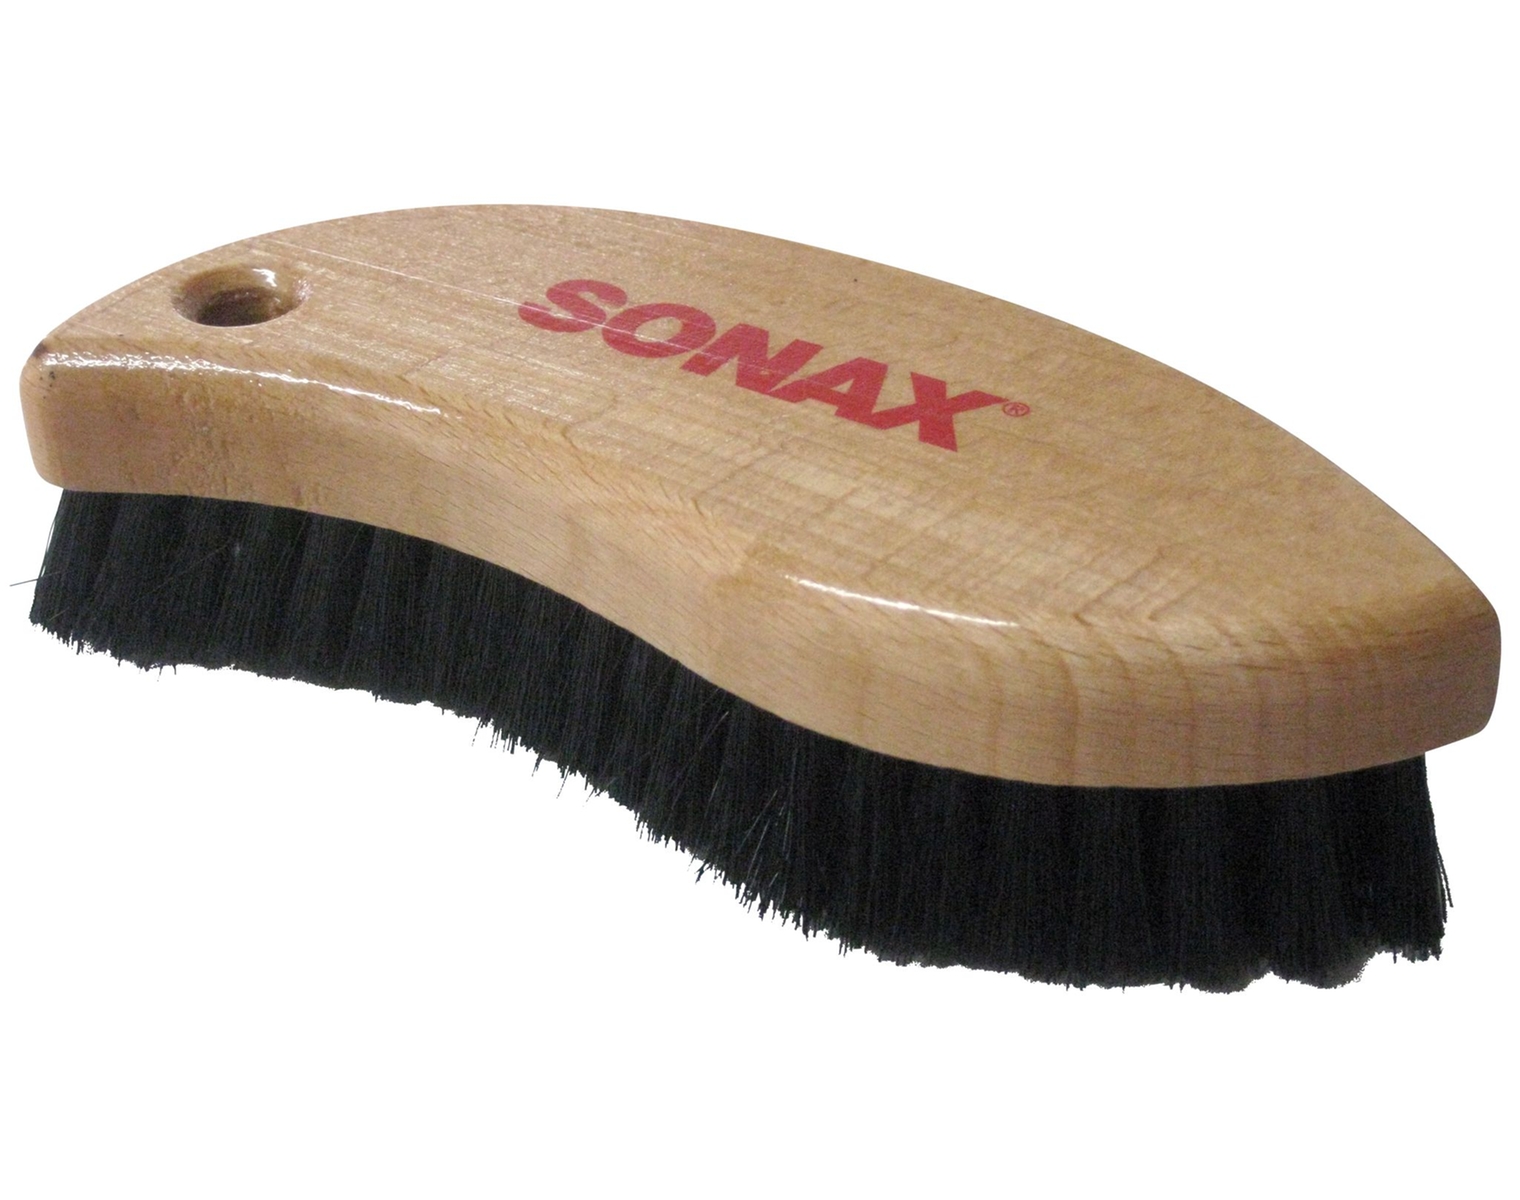 Brosse Sonax pour le nettoyage des cuirs et textiles